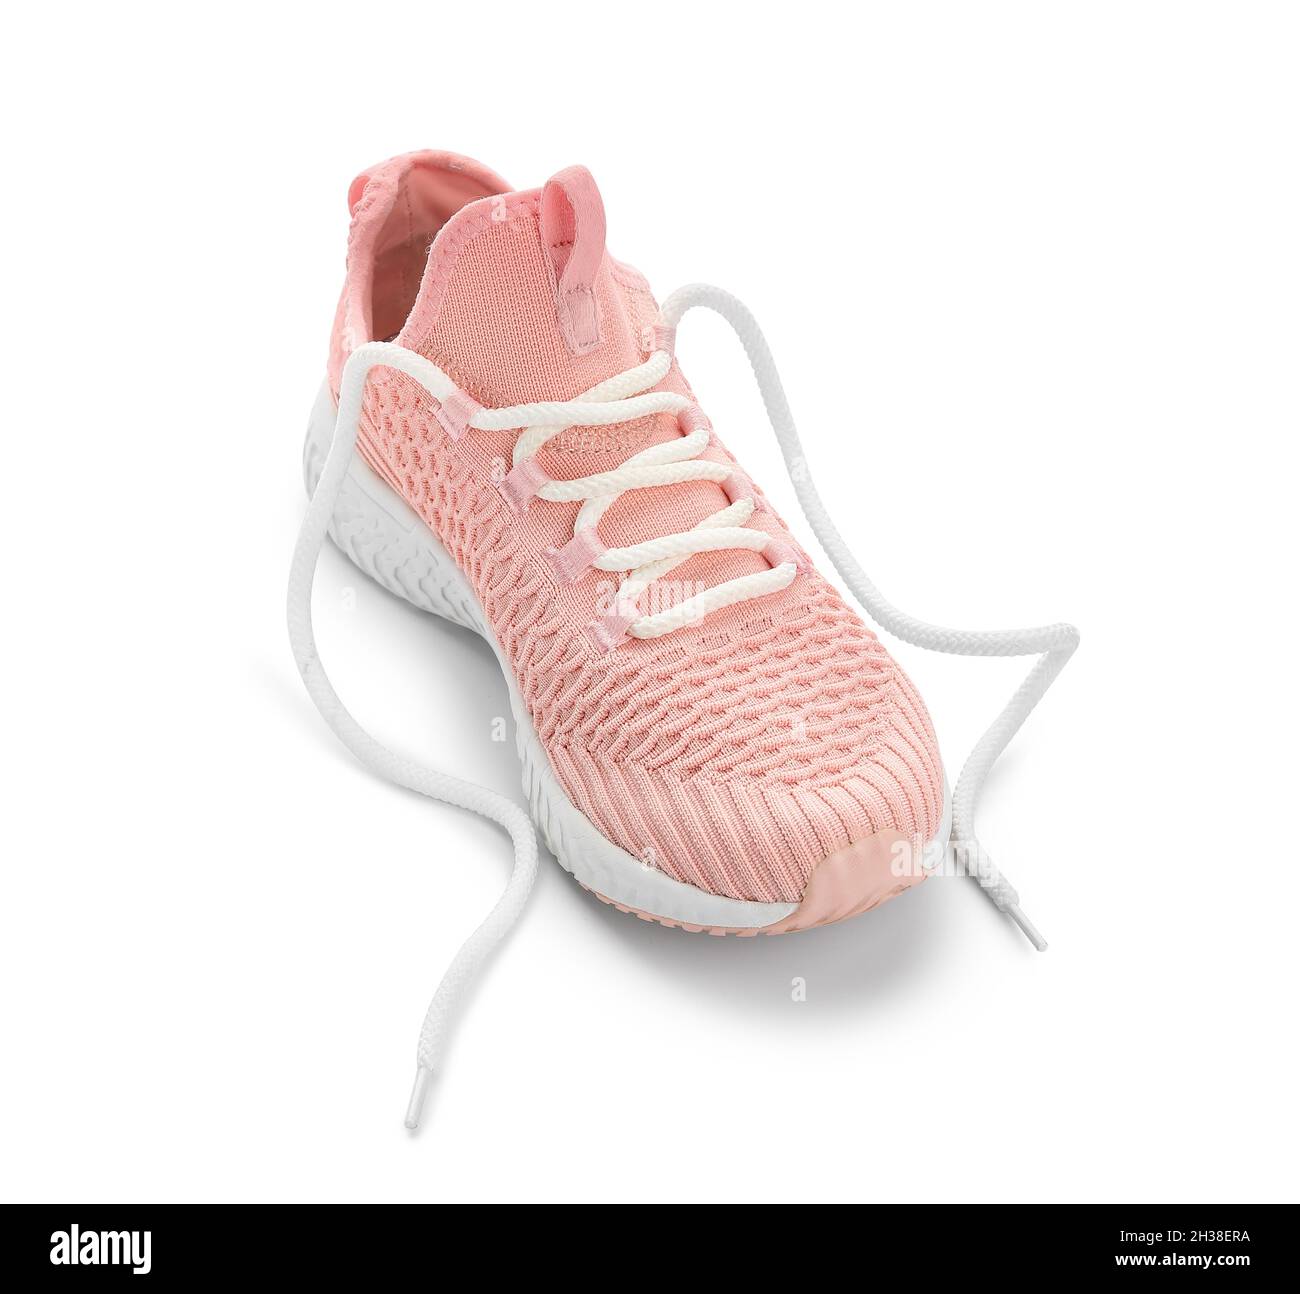 Chaussure rose avec dentelle dénouée sur fond blanc Photo Stock - Alamy